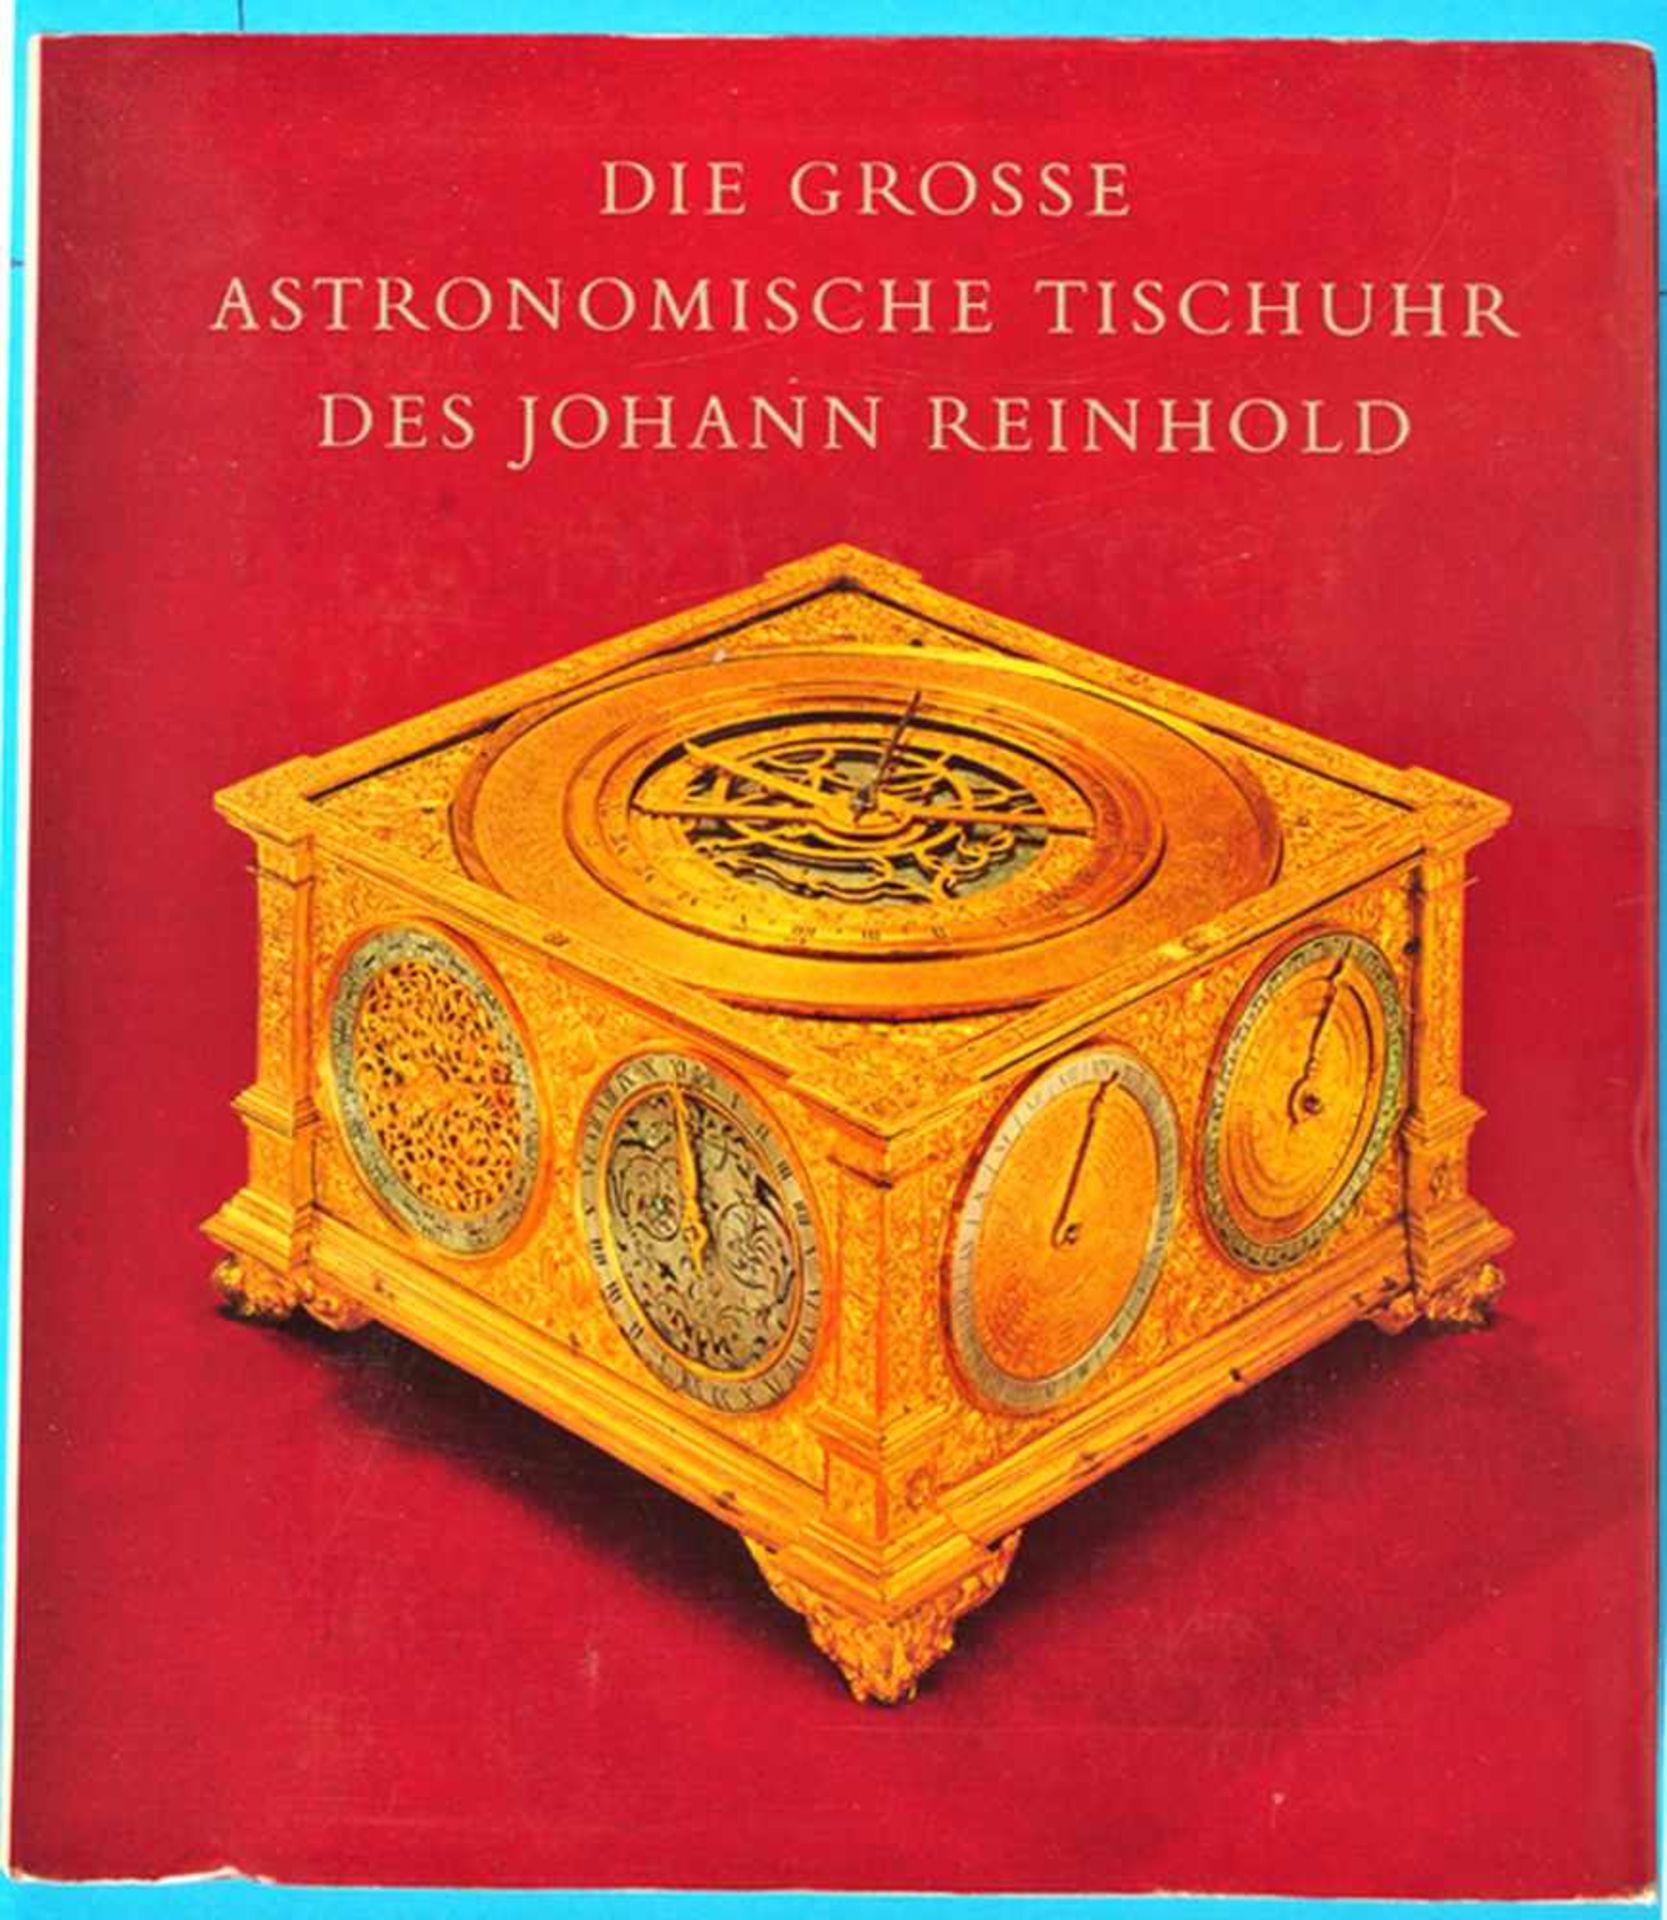 J. H. Leopold, Die grosse astronomische Tischuhr des Johann Reinhold - Augsburg, 1581 bis 1592,